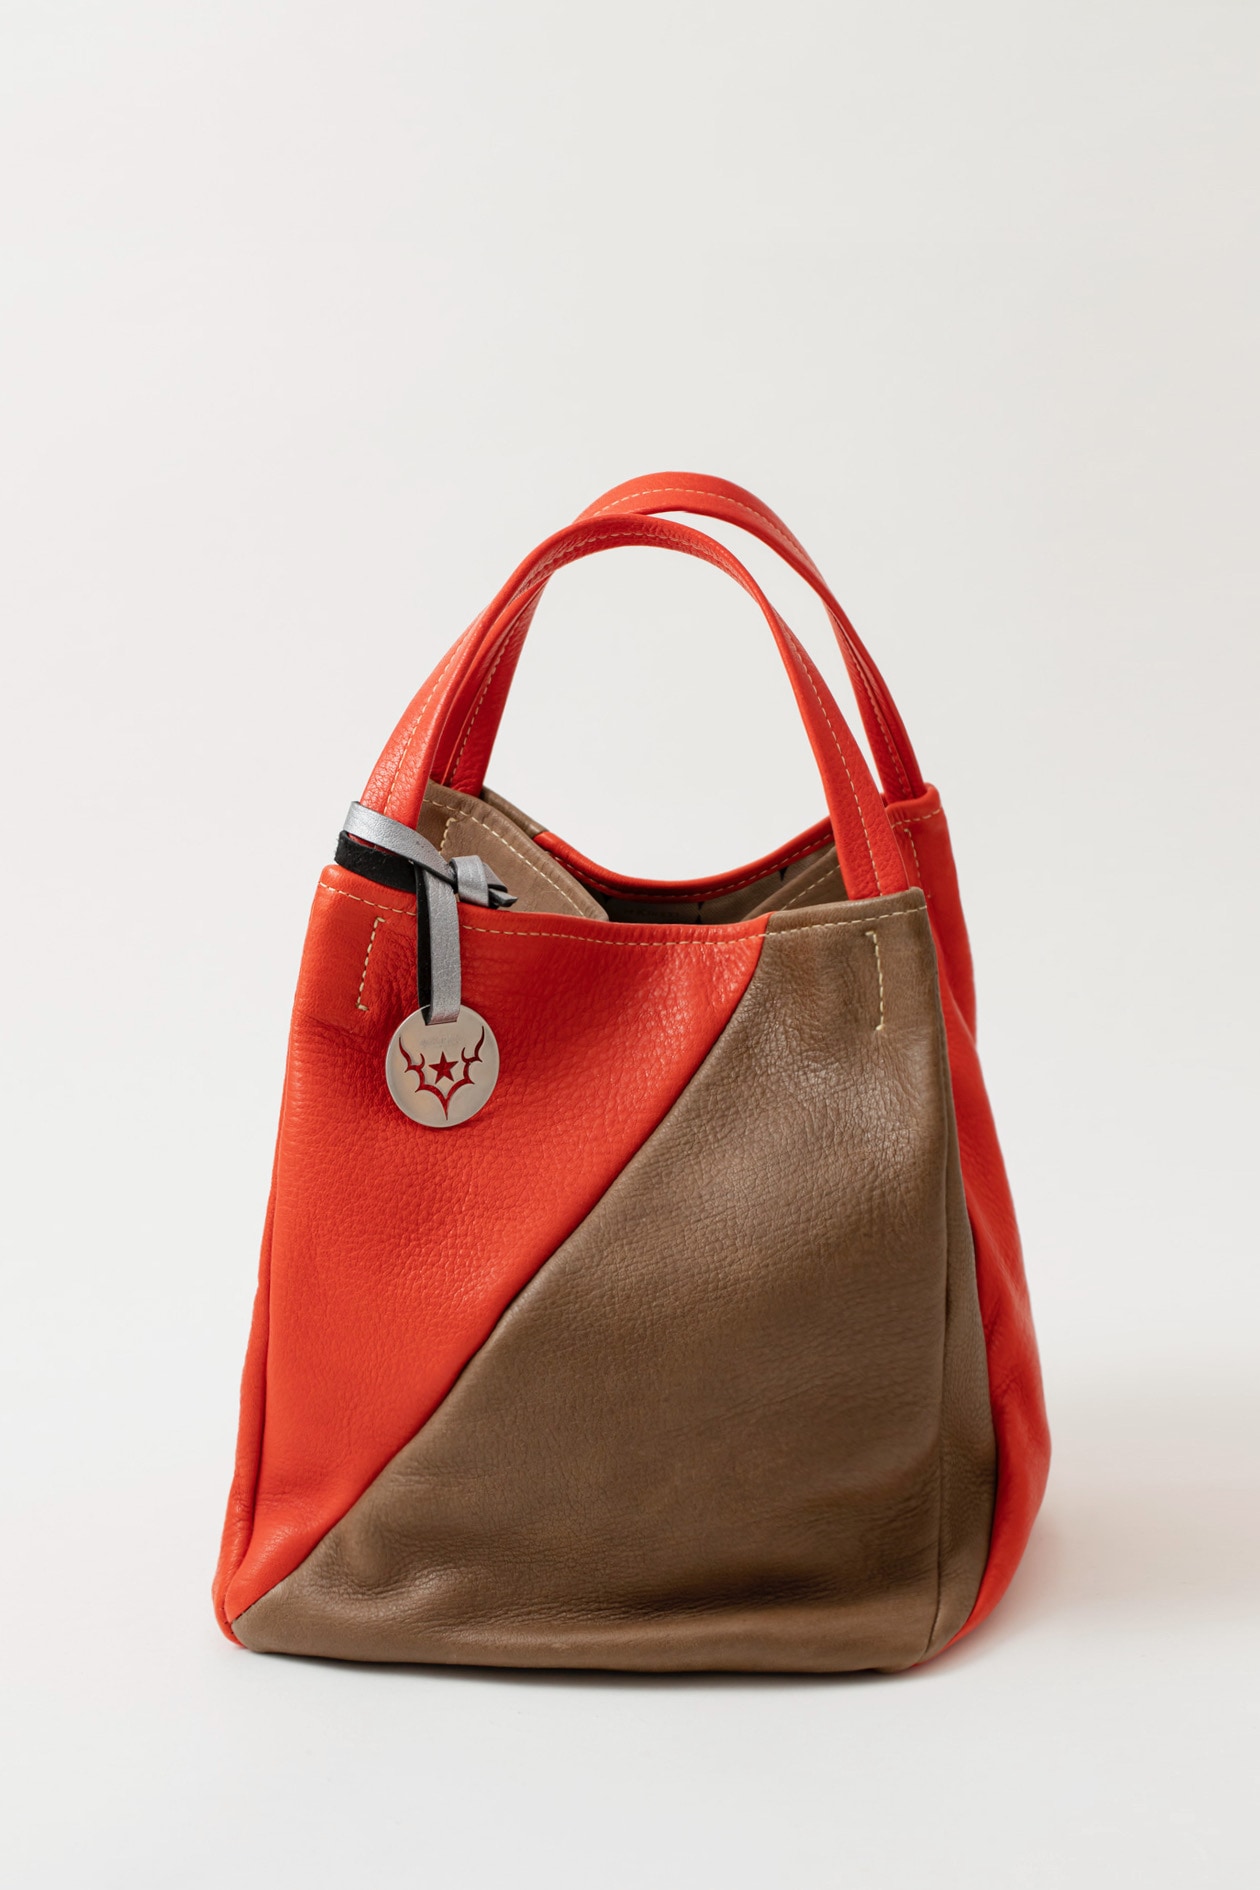 24KIRICOのエゾシカ皮で作るトートバッグ「EZO/slash（スラッシュ）」のmediumサイズ,赤と茶色のハンドメイド革製バッグ